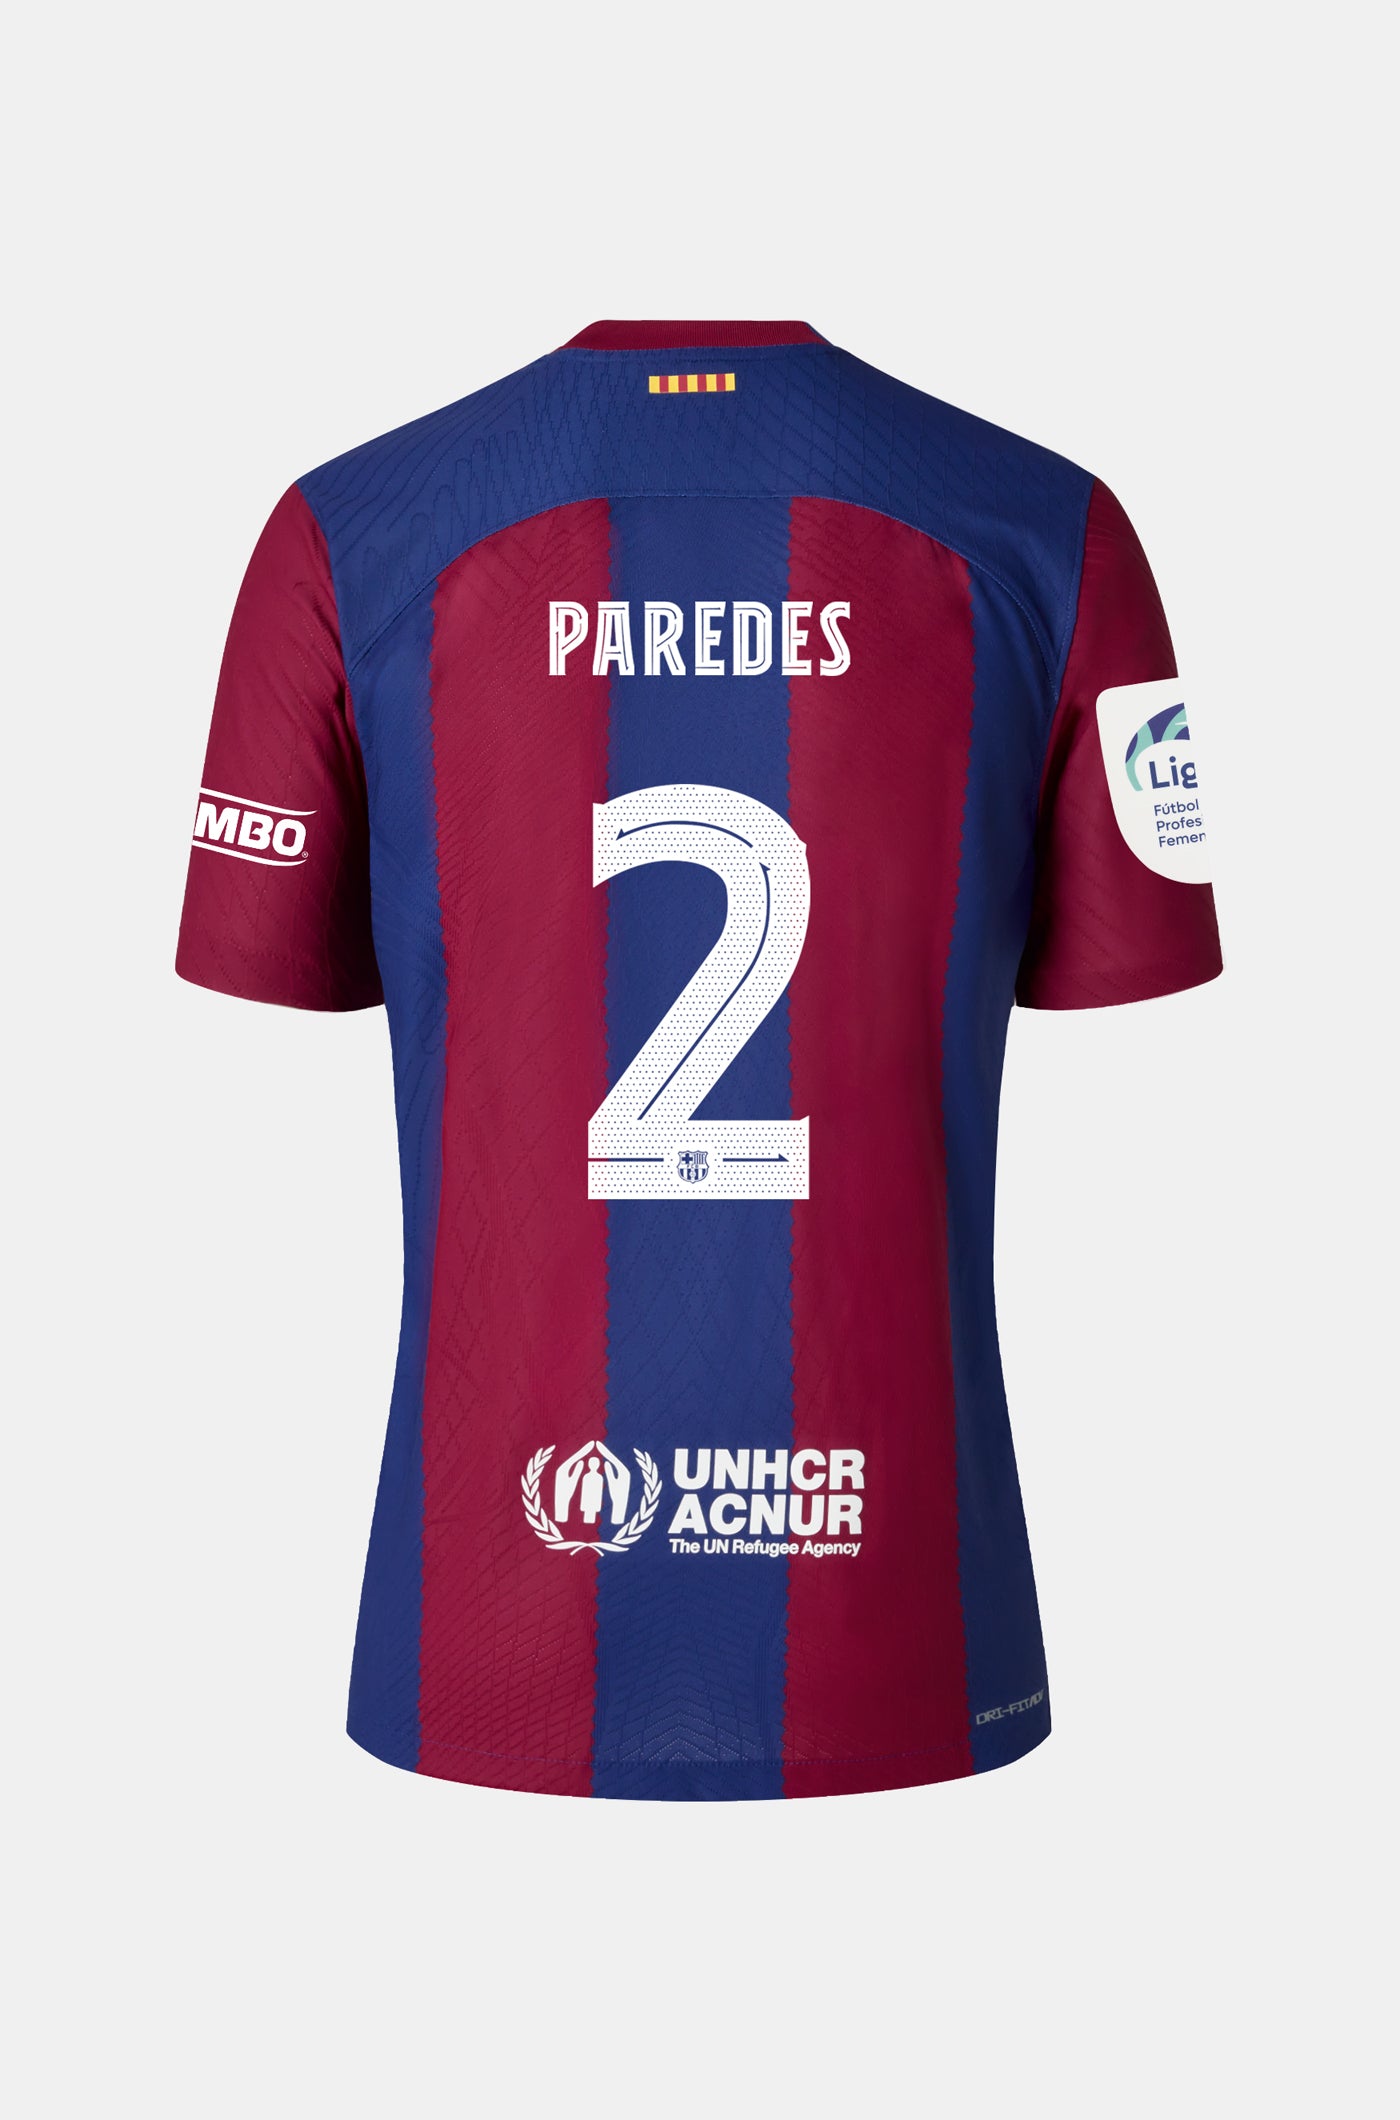 Liga F FC Barcelona home shirt 23/24 - Men - PAREDES